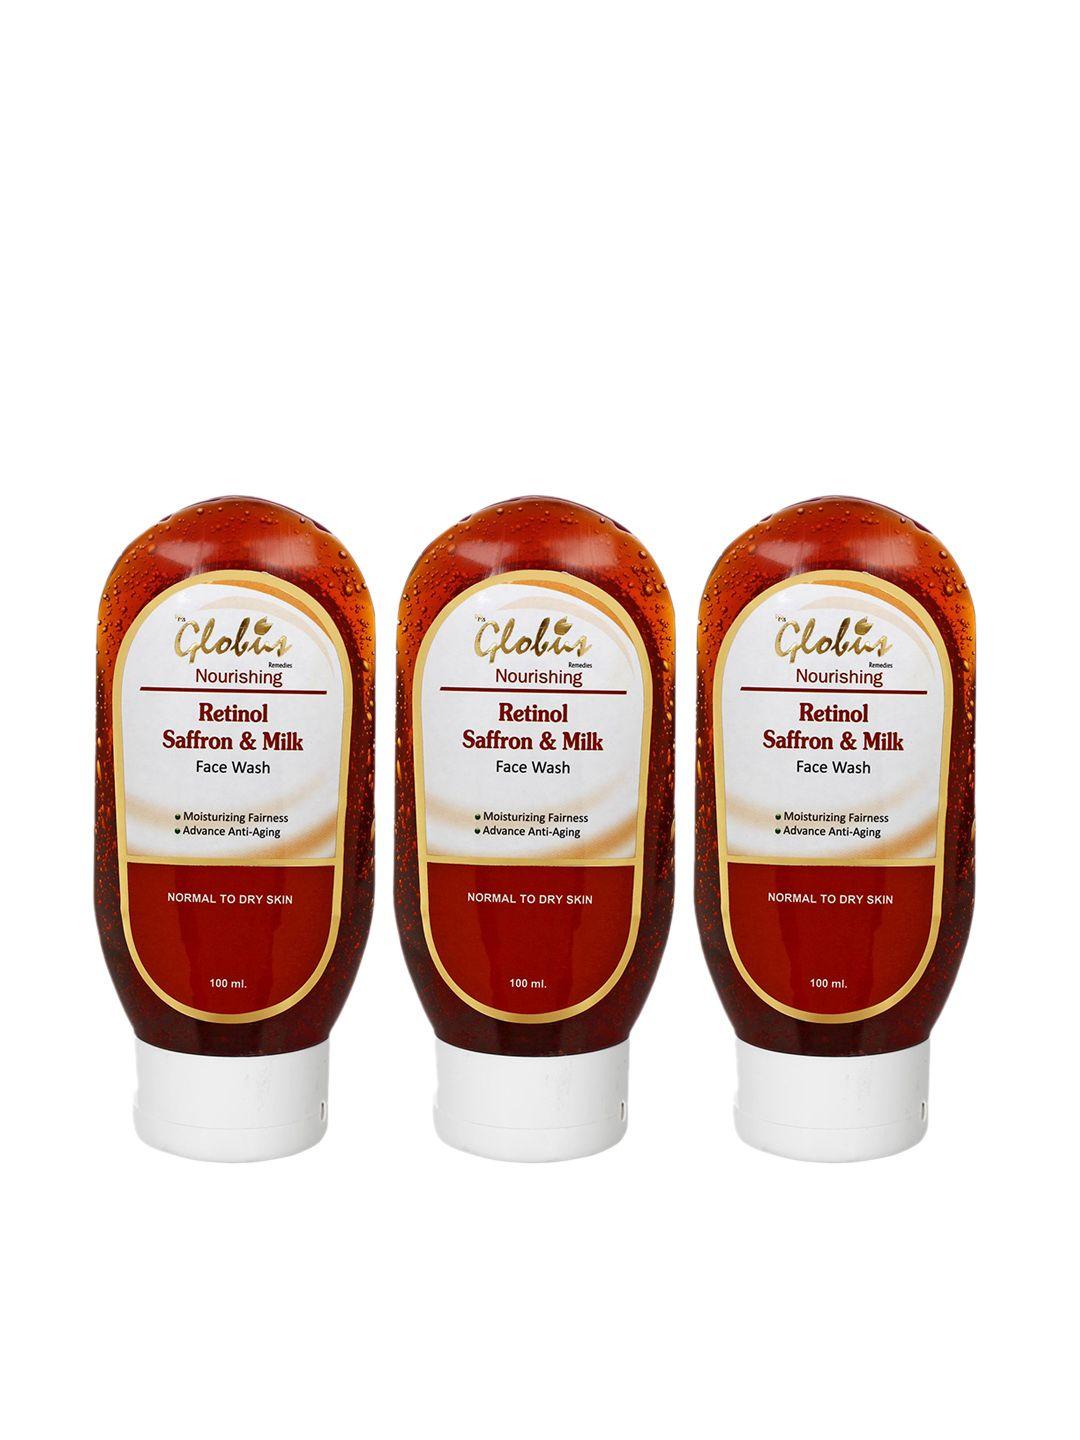 globus remedies set of 3 retinol saffron & milk instant glow face wash - 100ml each